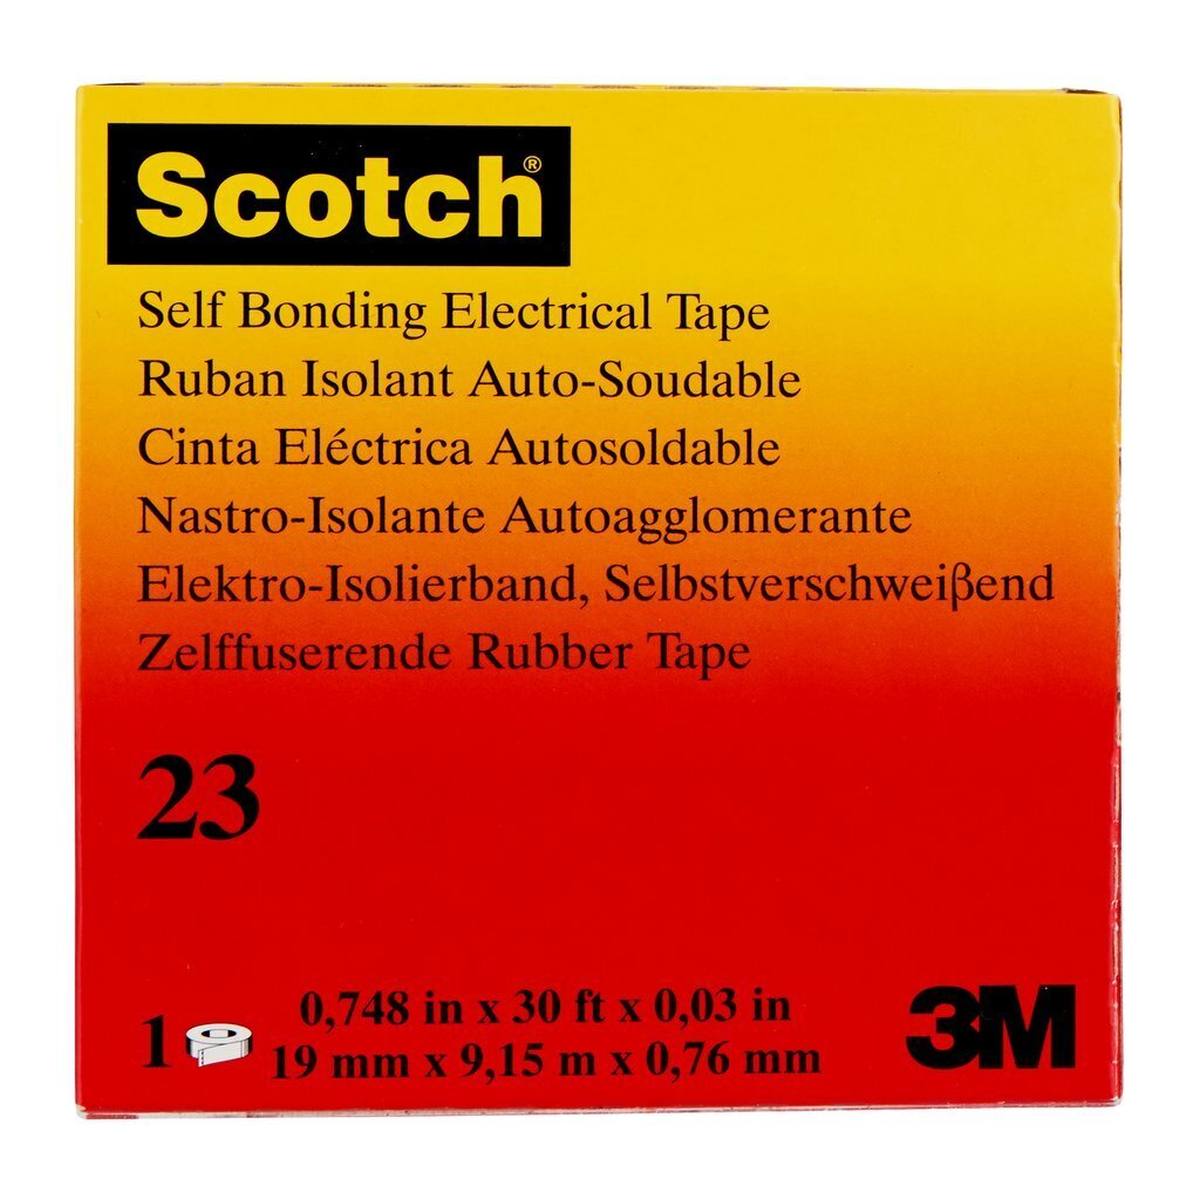 3M Scotch 23 Ruban auto-adhésif en caoutchouc éthylène-propylène, 19 mm x 9,15 m